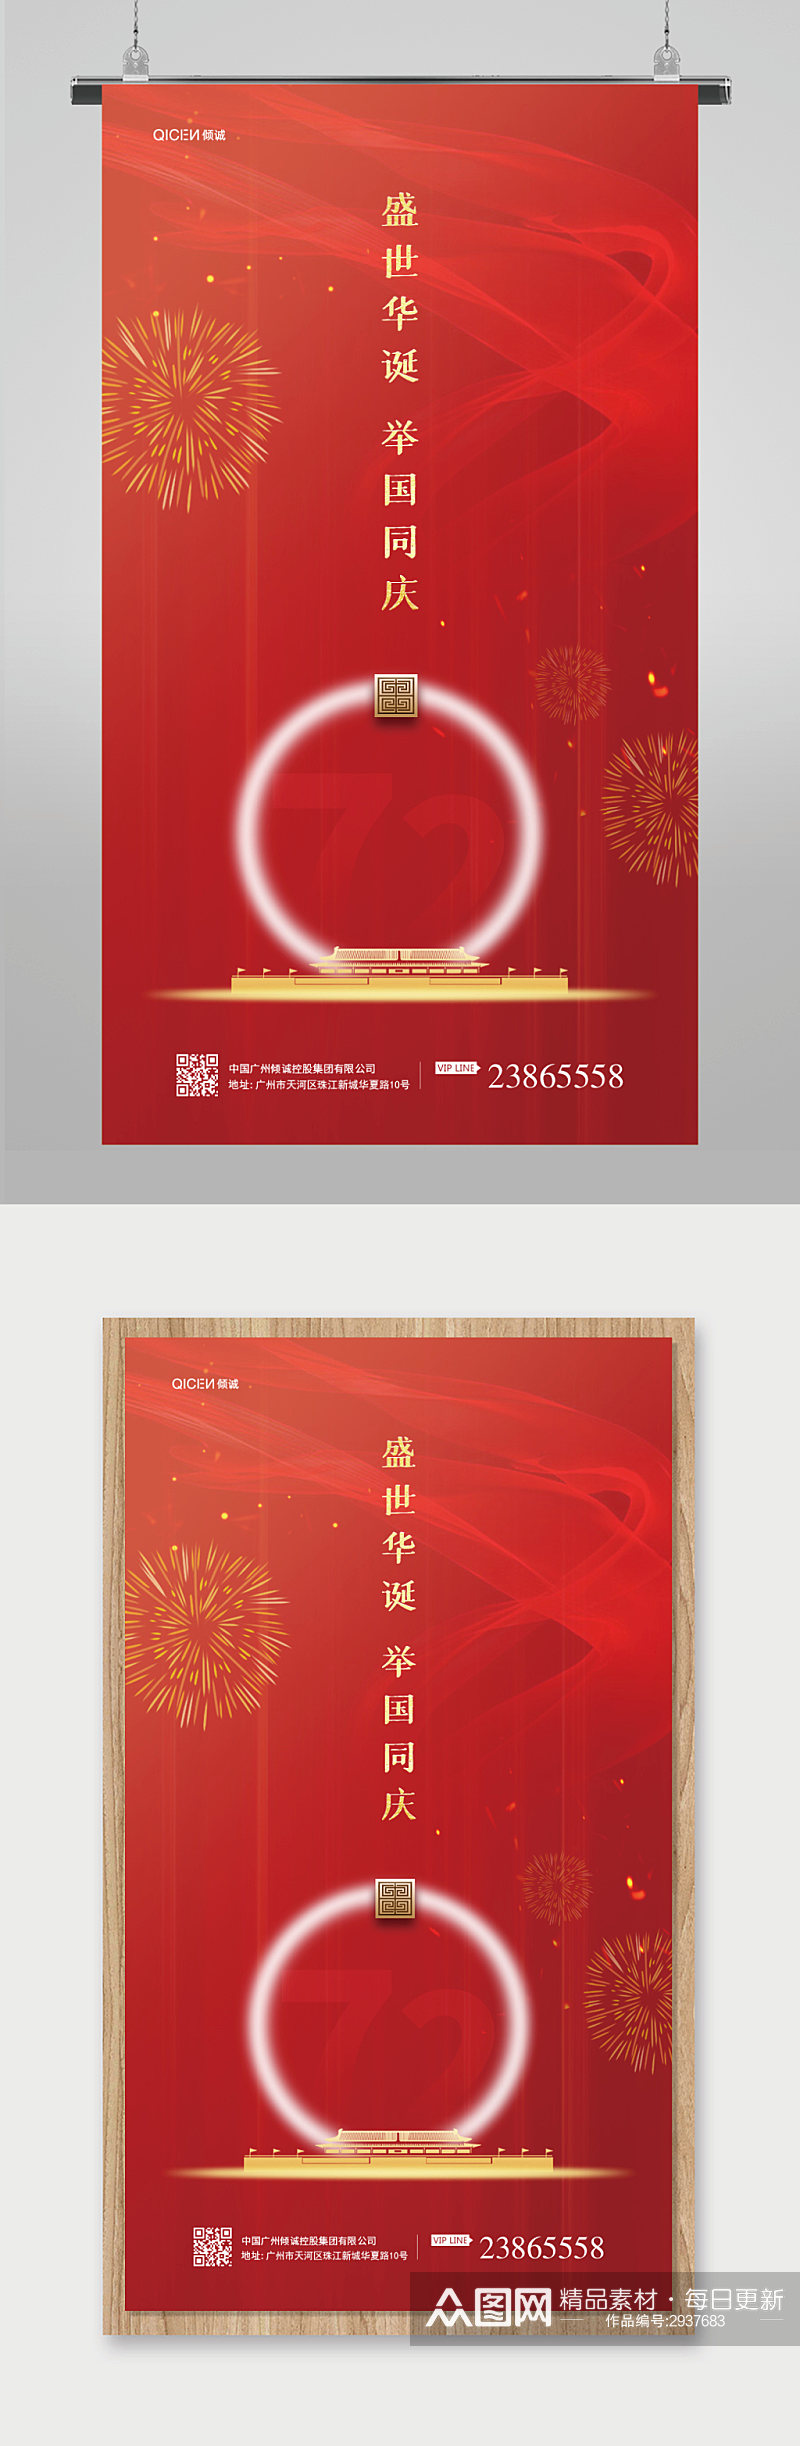 红色大气房地产营销国庆节海报素材